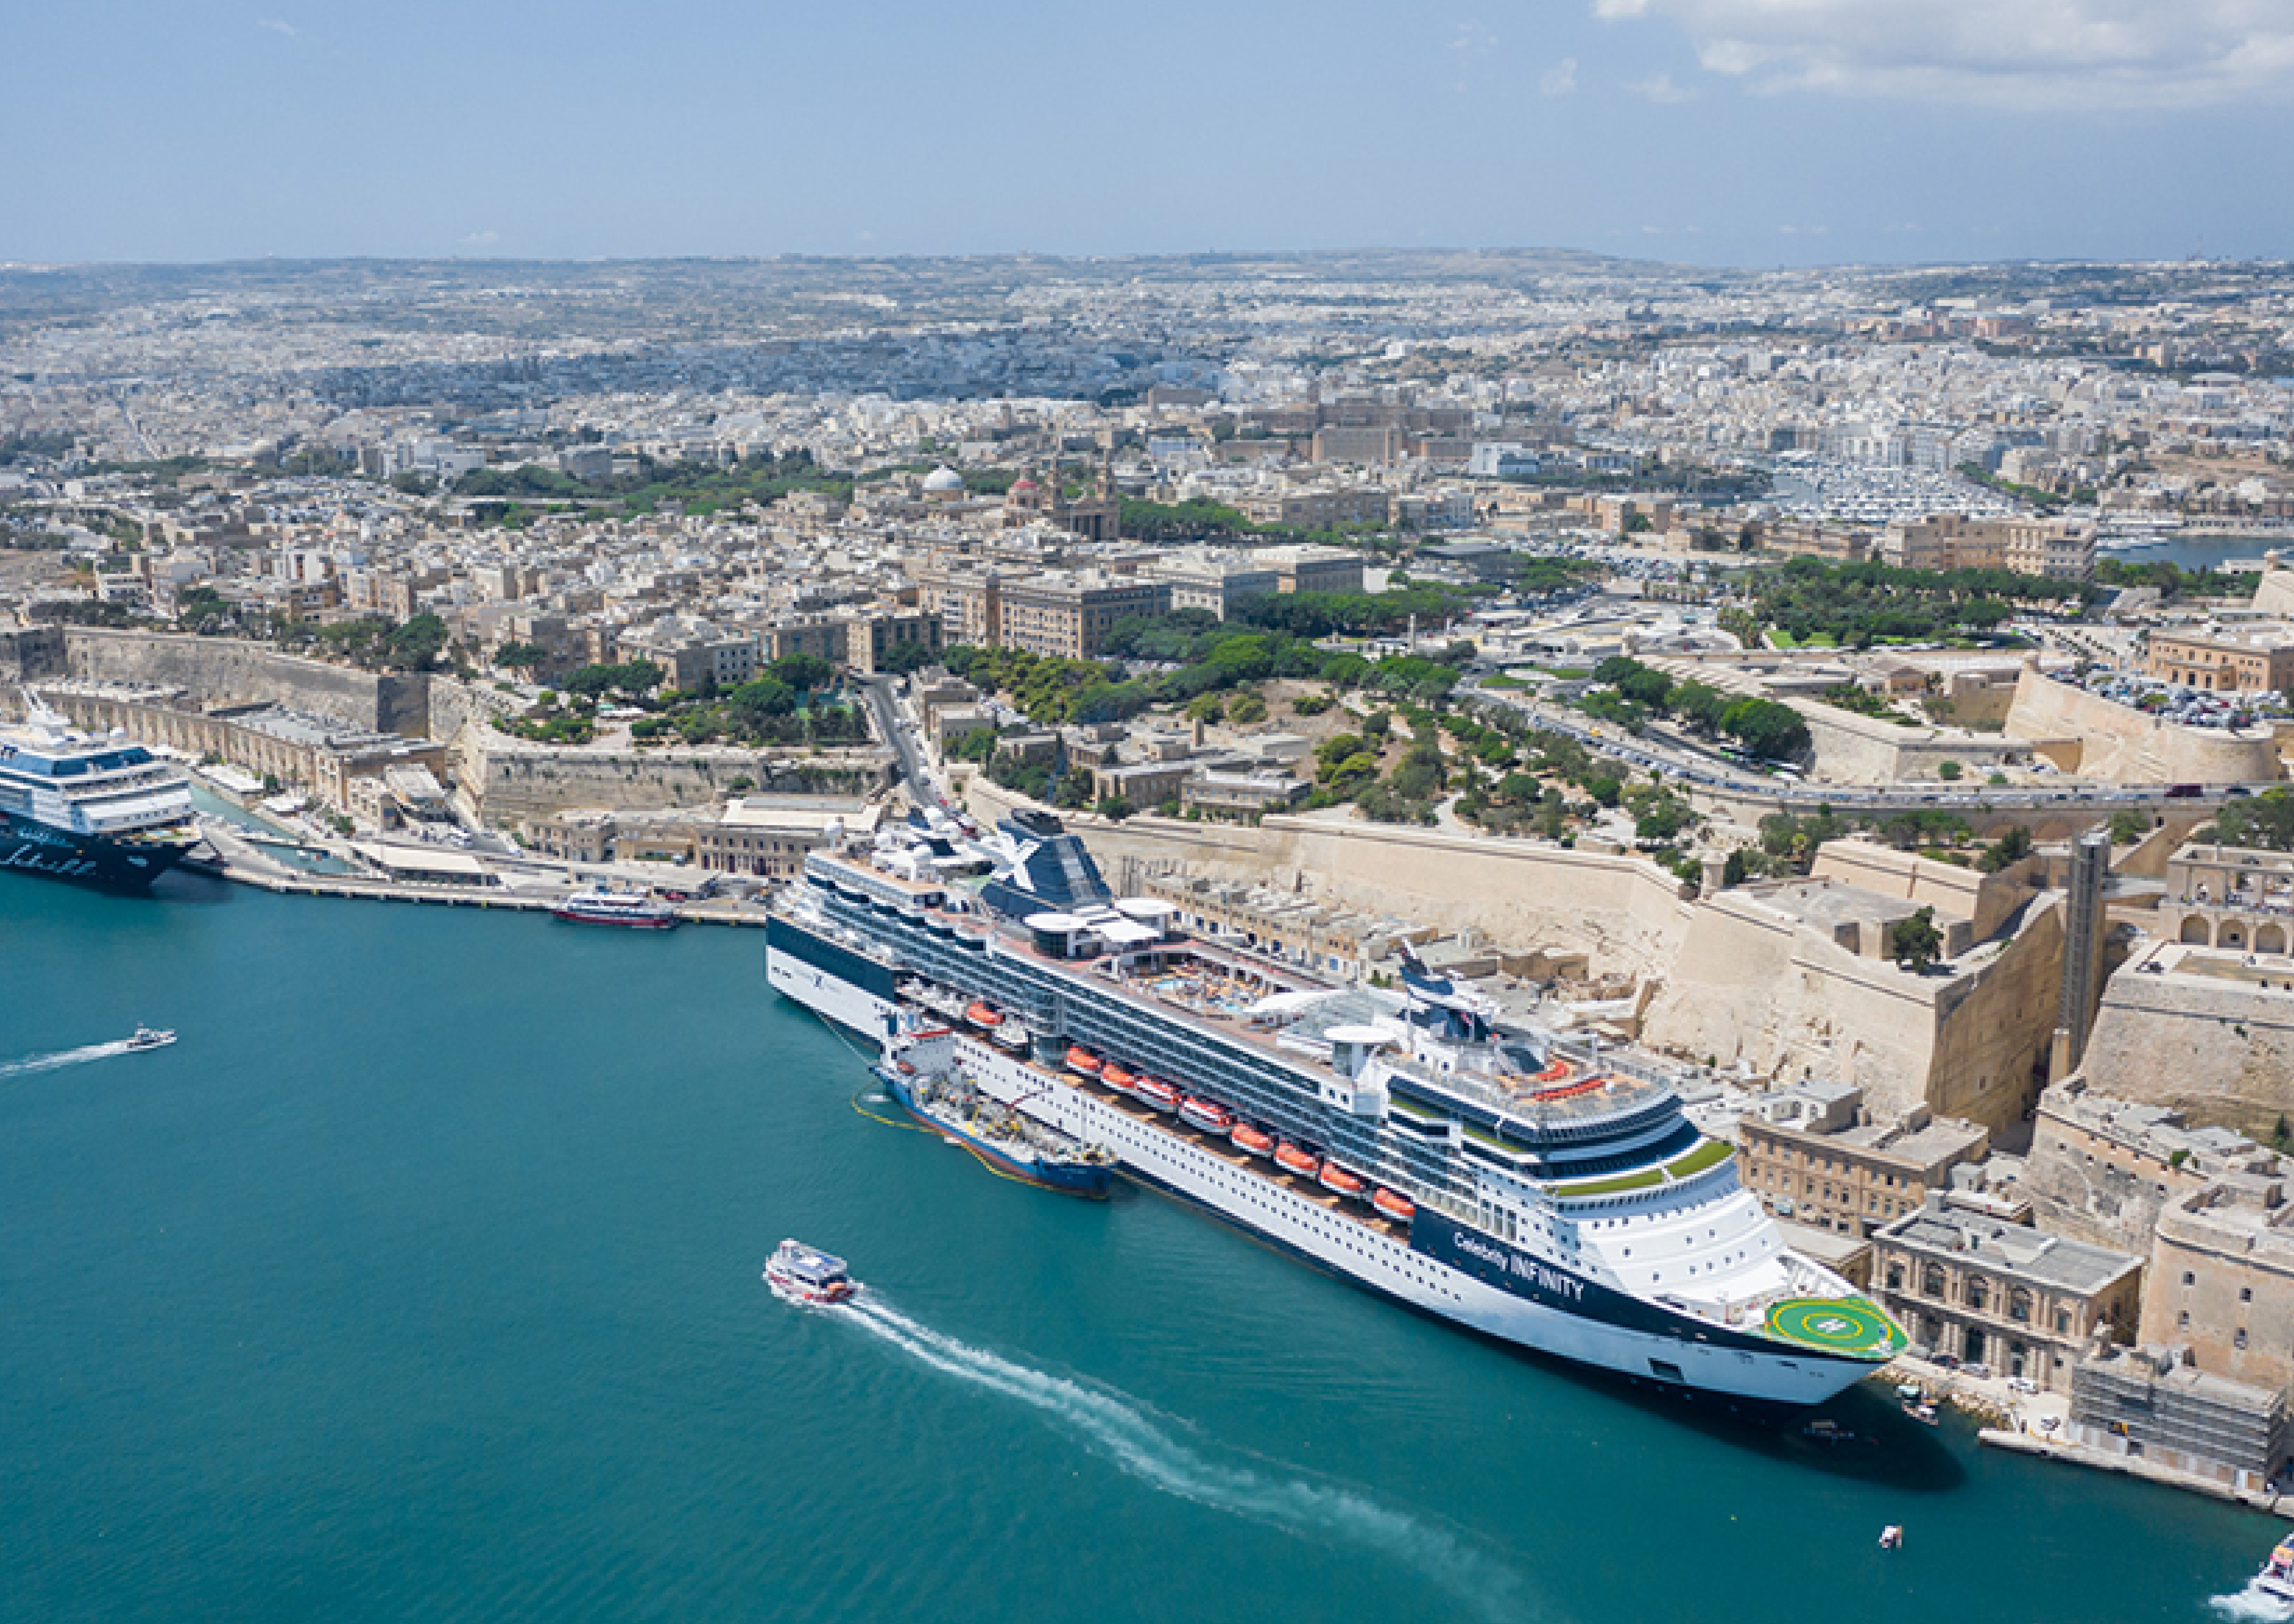 Valletta port, cruiseship